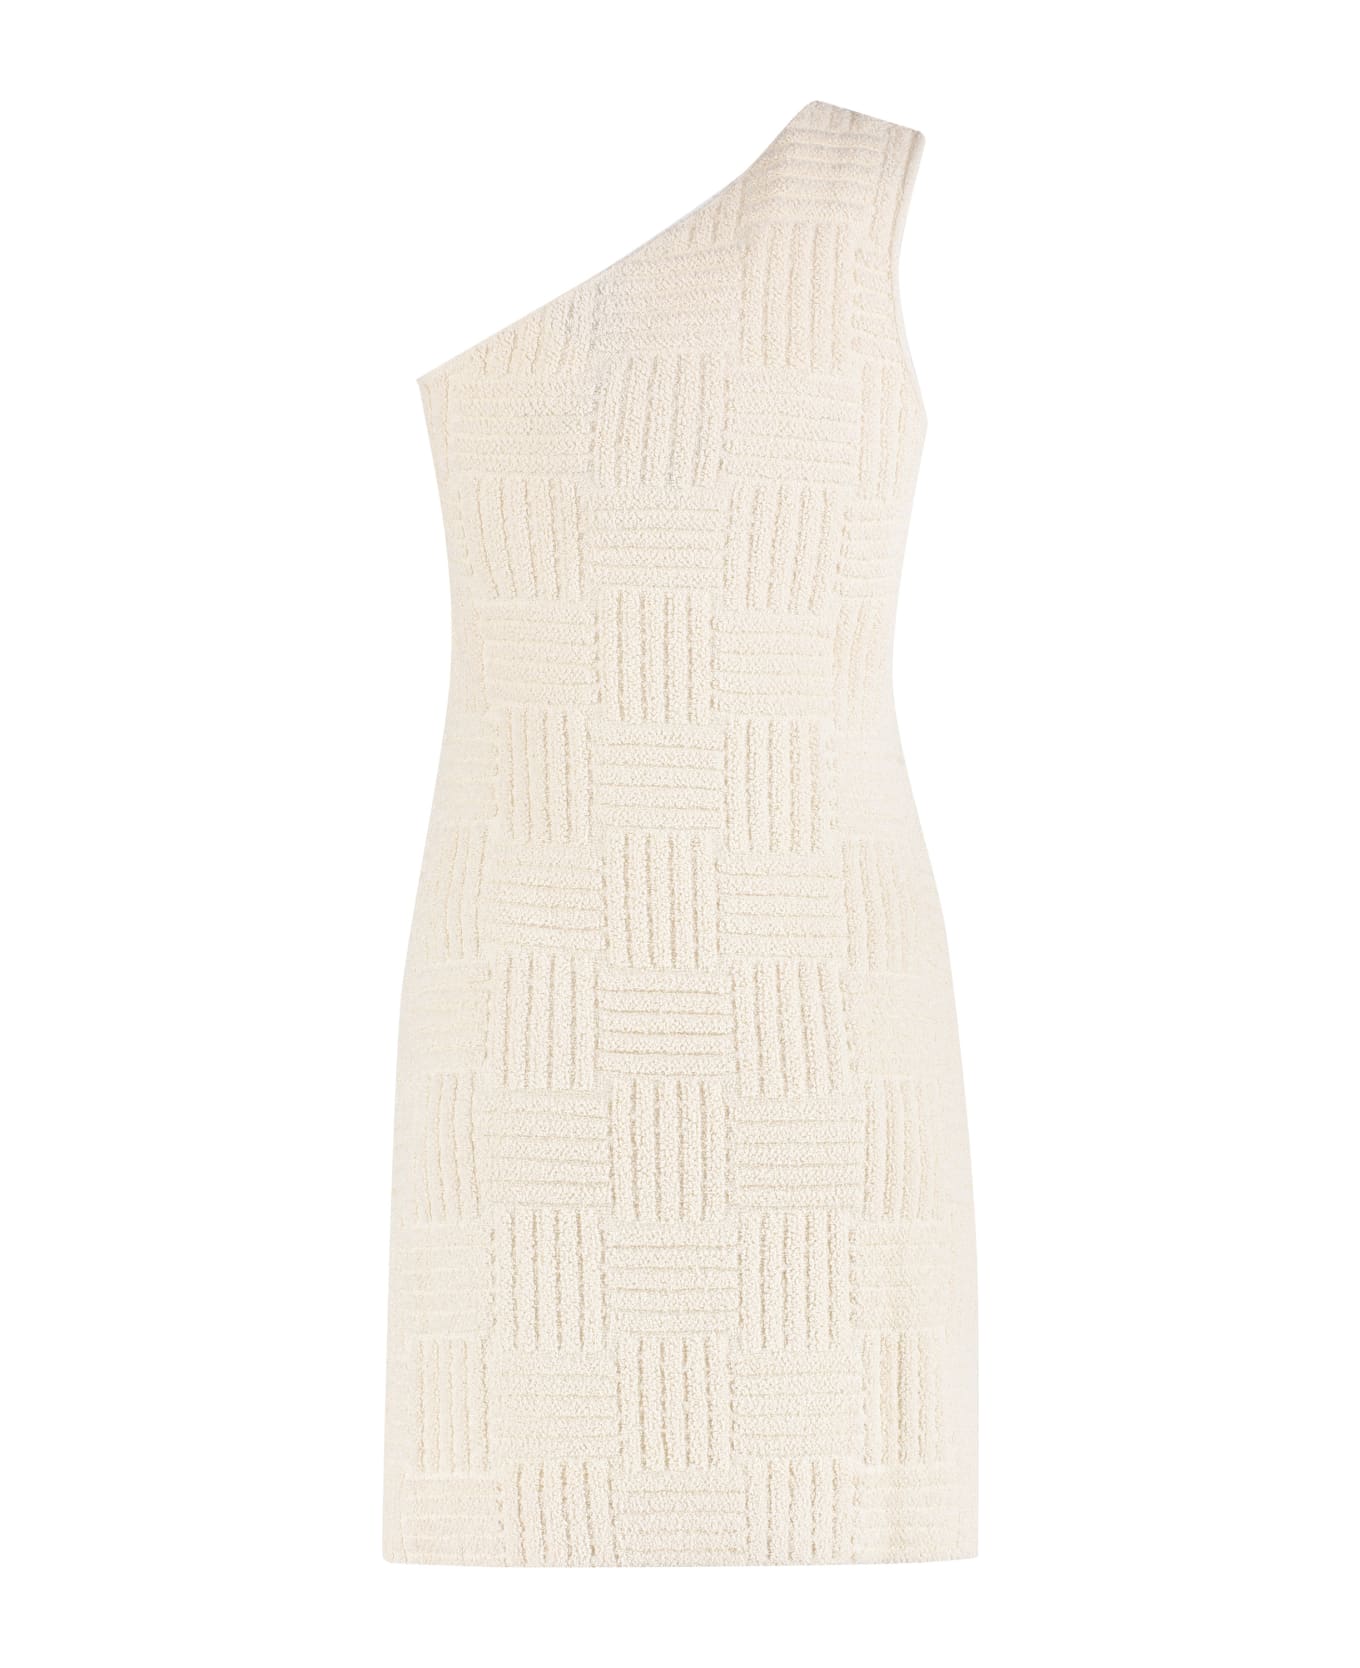 Bottega Veneta Jacquard Knit Mini-dress - Ivory